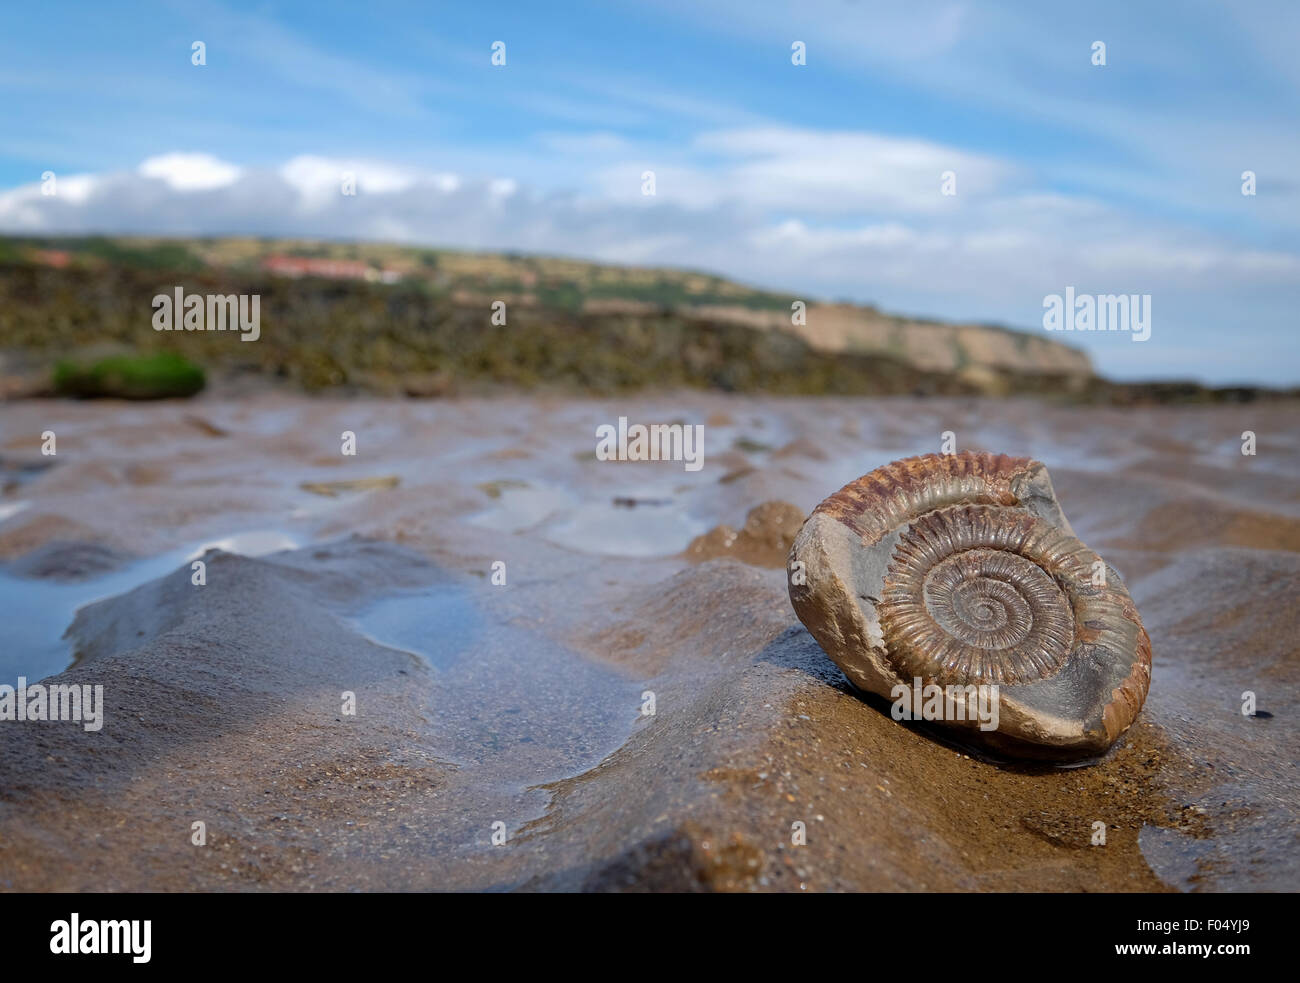 Un fossile d'ammonite sur la plage de Robin Hood's Bay, une partie de la côte jurassique du Yorkshire, UK Banque D'Images